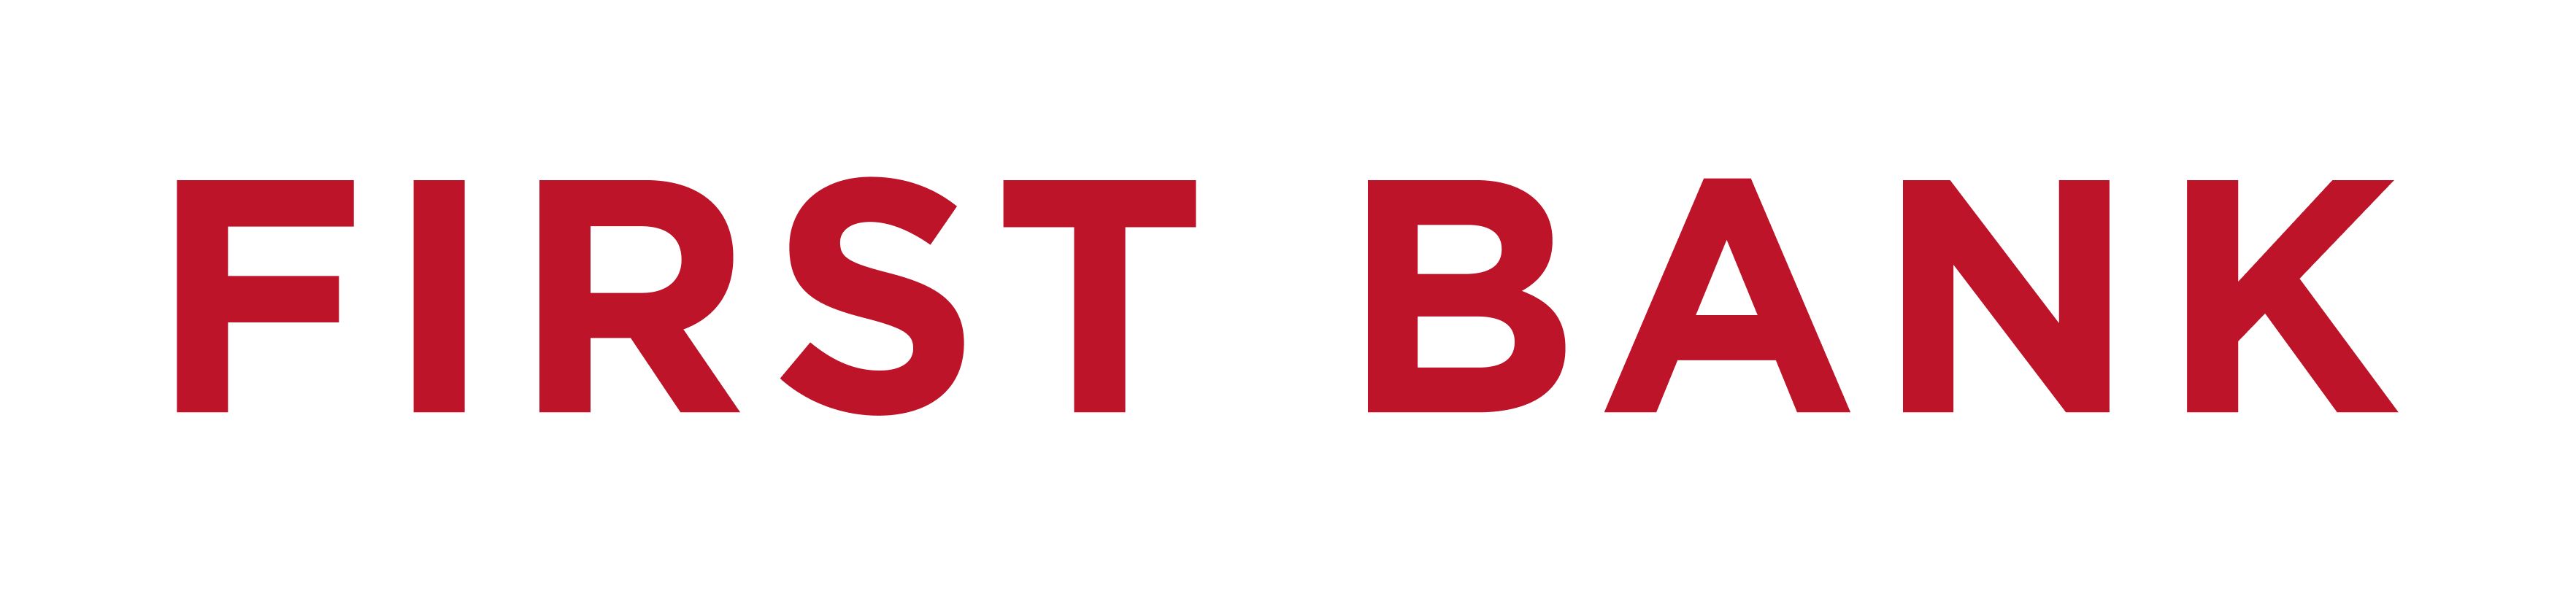 First Bank Logo White